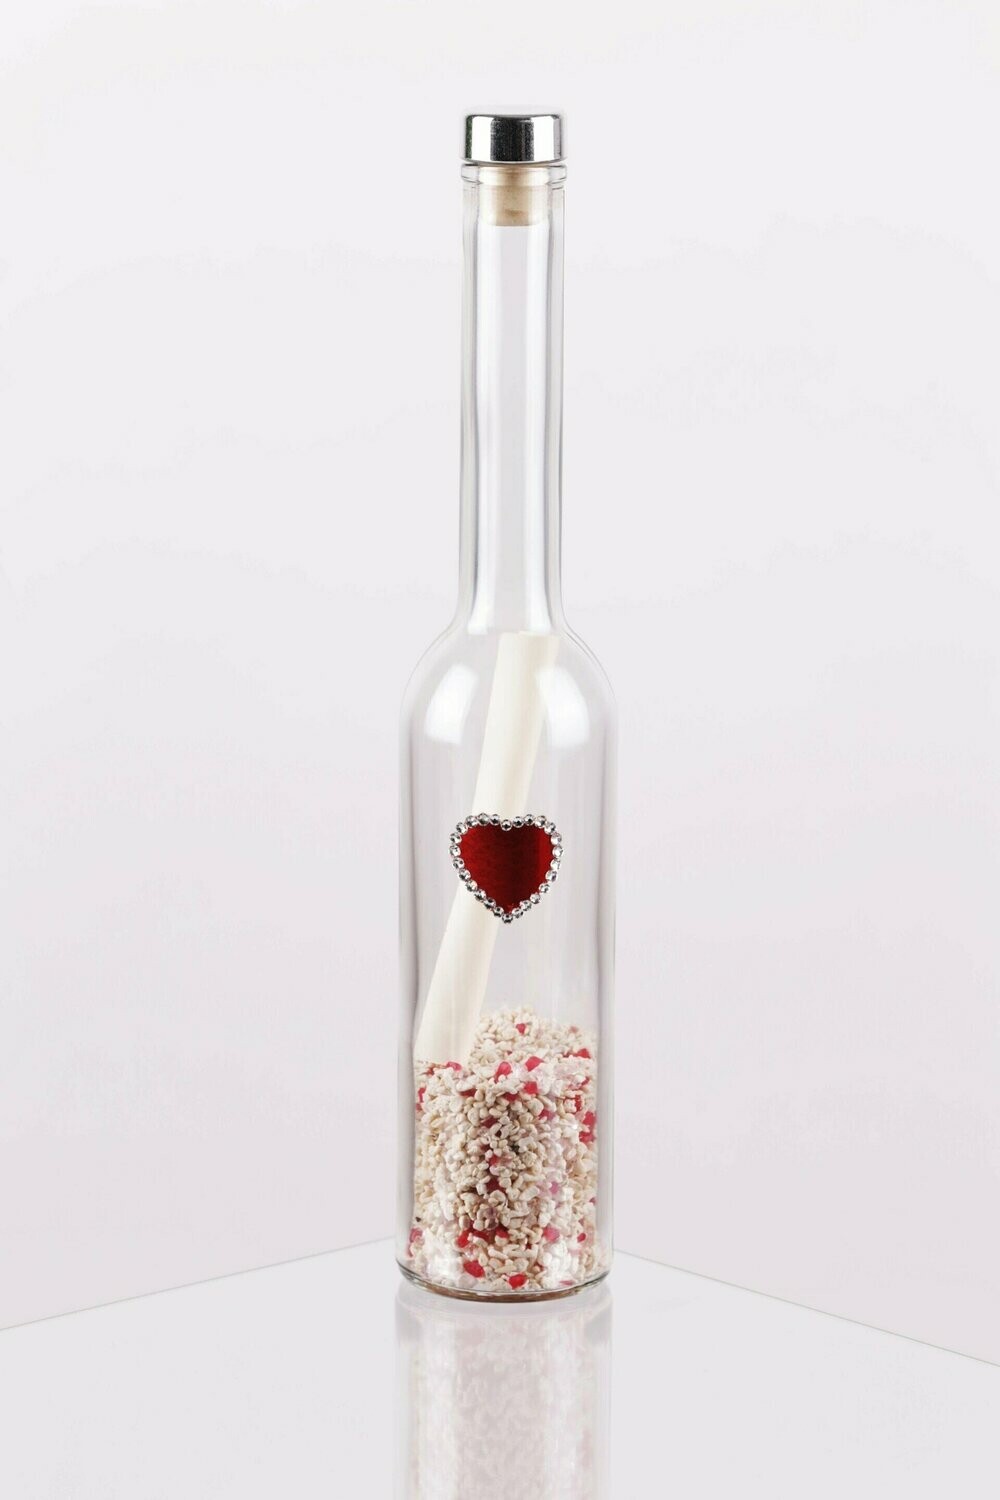 Messaggio in bottiglia - 01 Cuore piccolo con cristalli Swarovsky